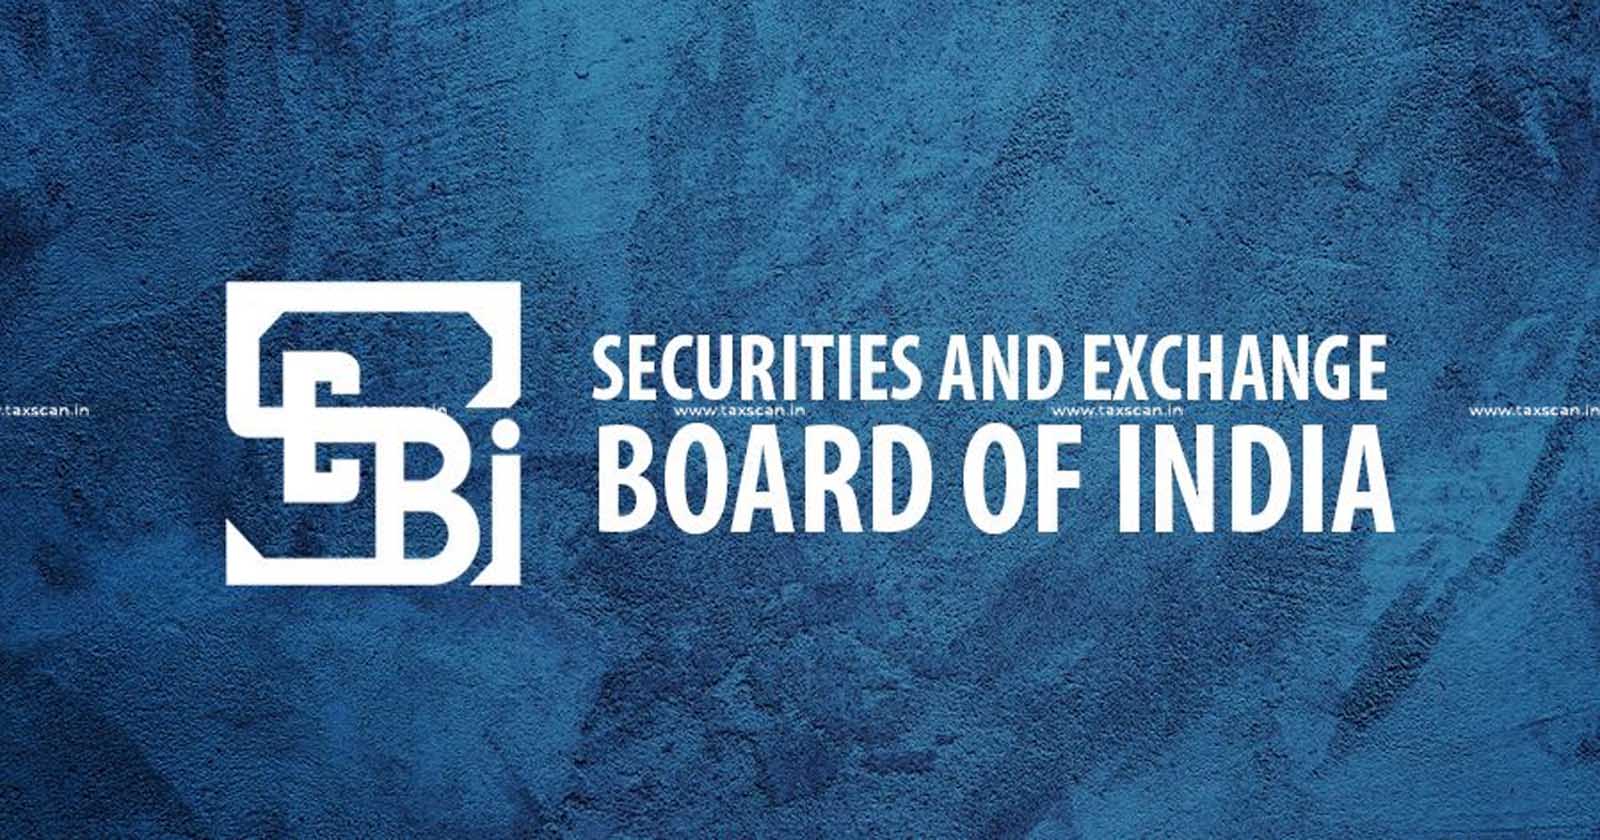 SEBI - SEBI notifies amendment - amendment - SEBI notifies amendment of Securities Securities - Securities and Exchange - Securities and Exchange - taxscan